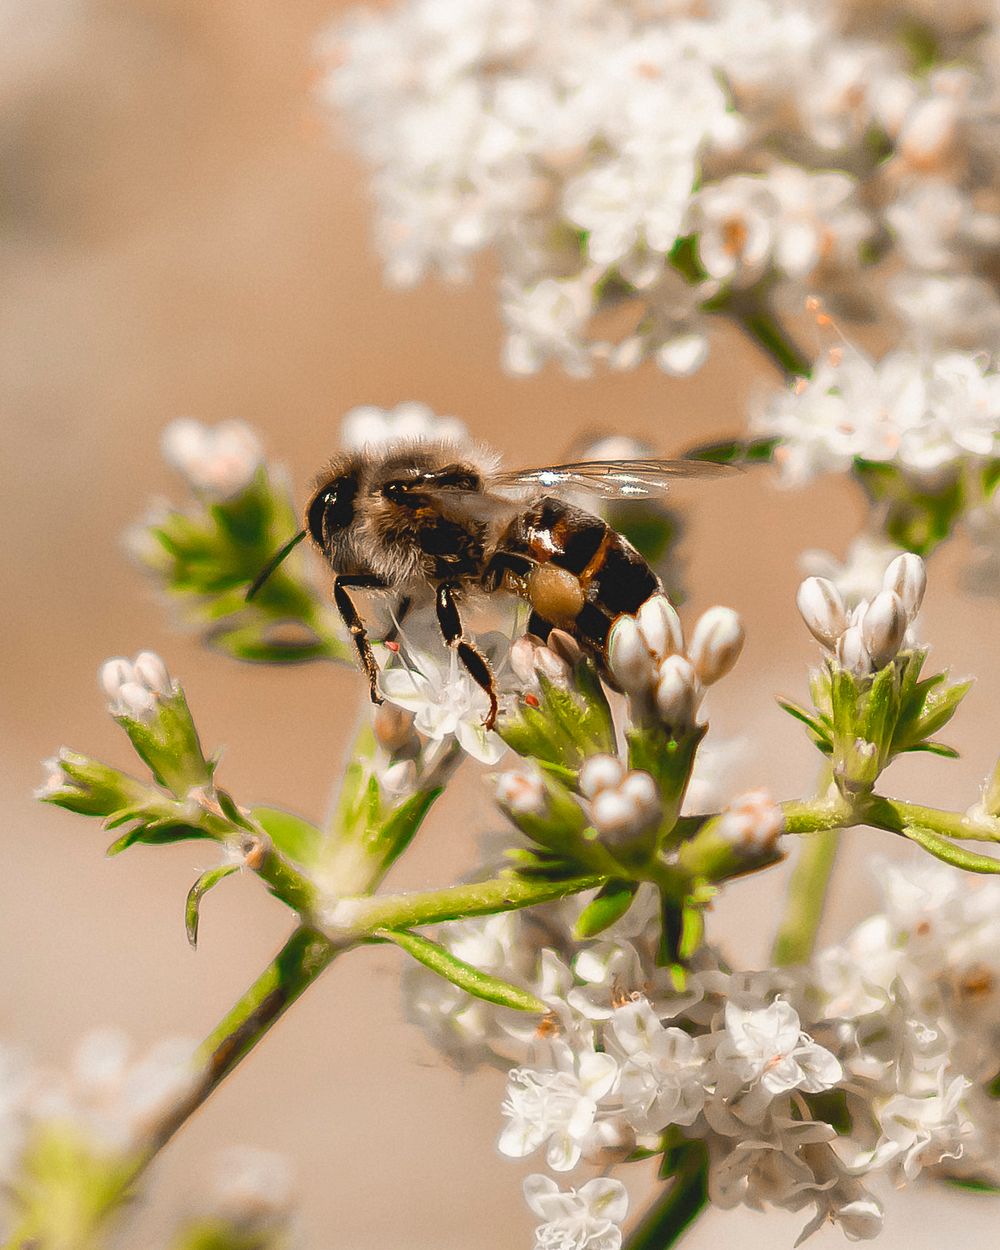 Bee & flower, close up shot.